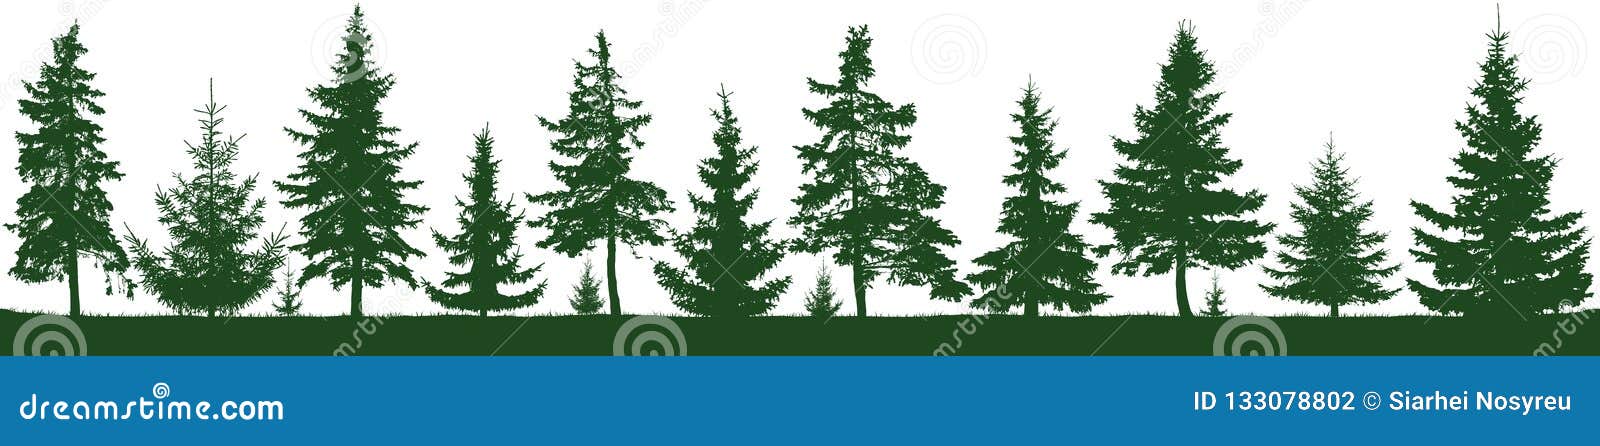 seamless forest fir trees silhouette. parkland, park, garden.